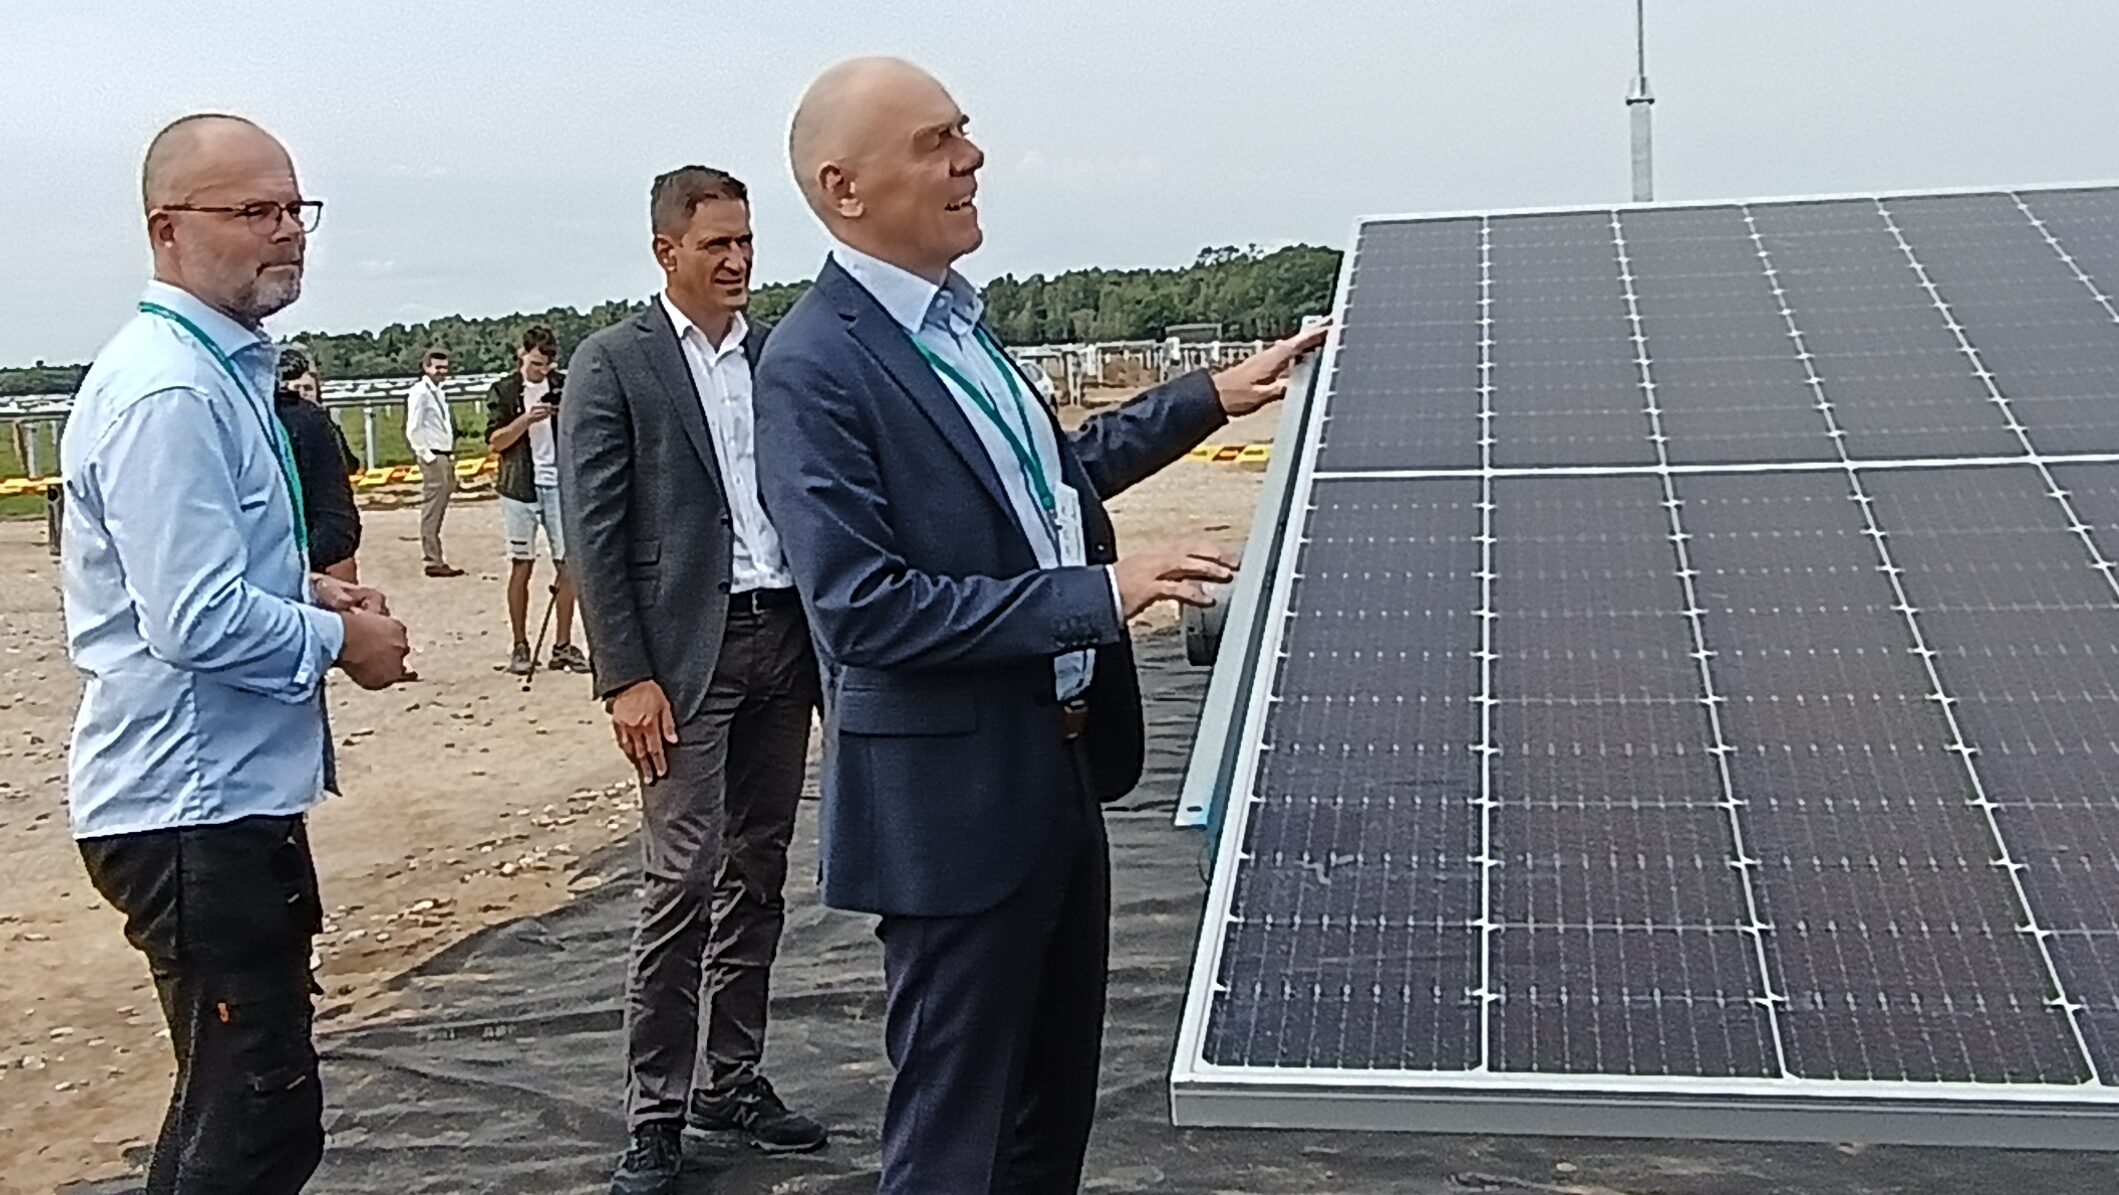 Vasuokėnai è il più grande parco di centrali solari negli Stati baltici